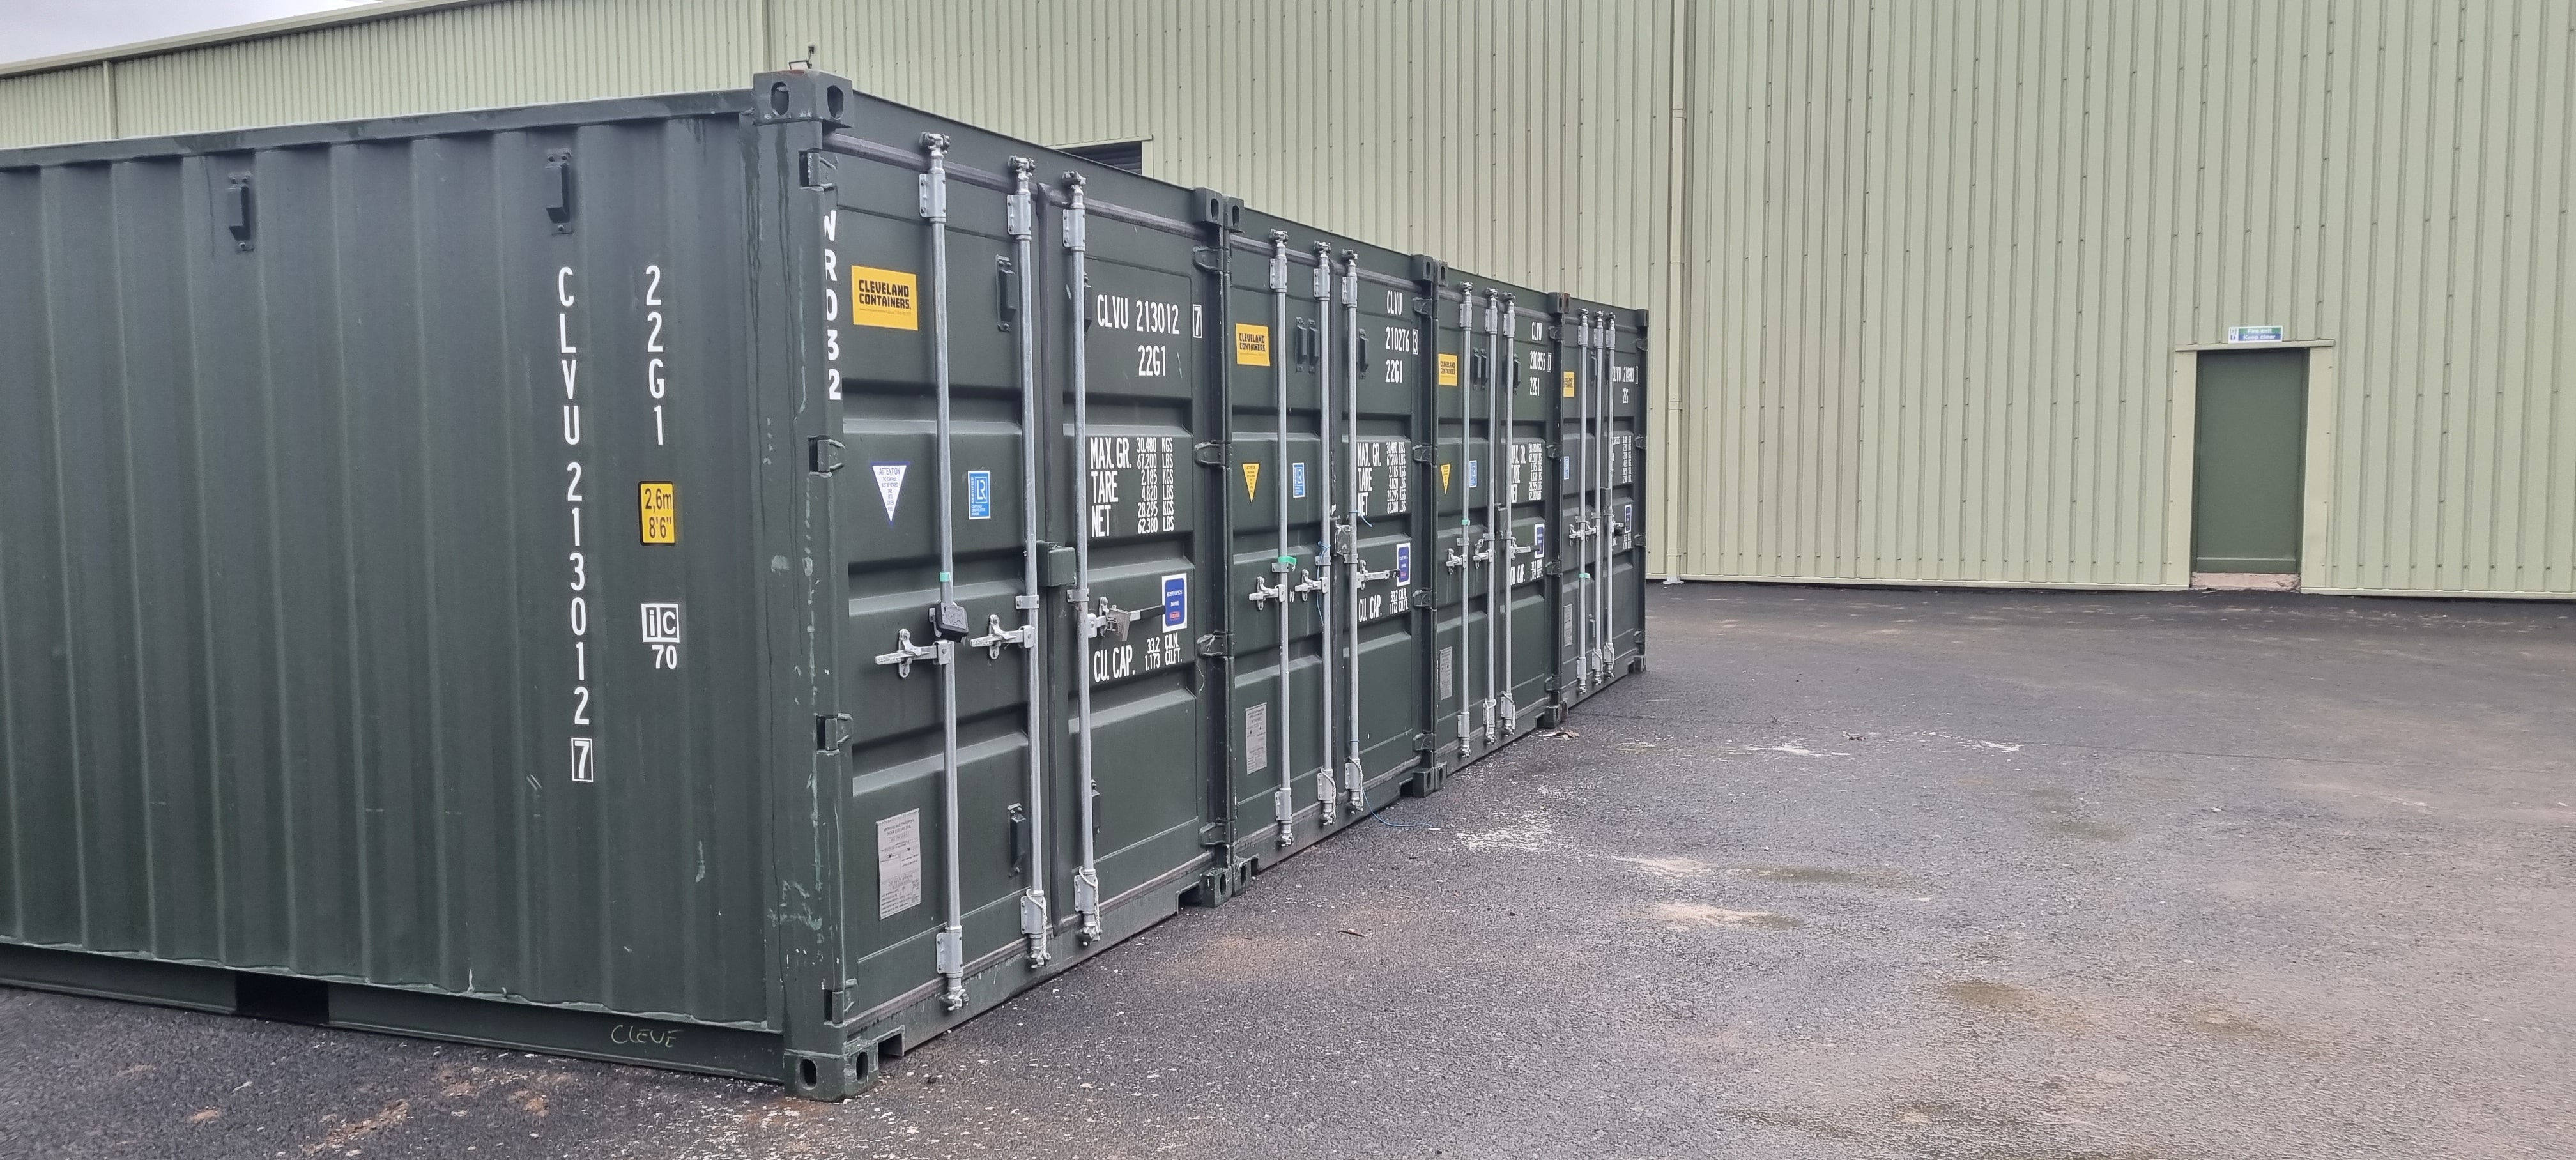 Cuboid Self Storage Wrexham, UK, climate controlled storage units